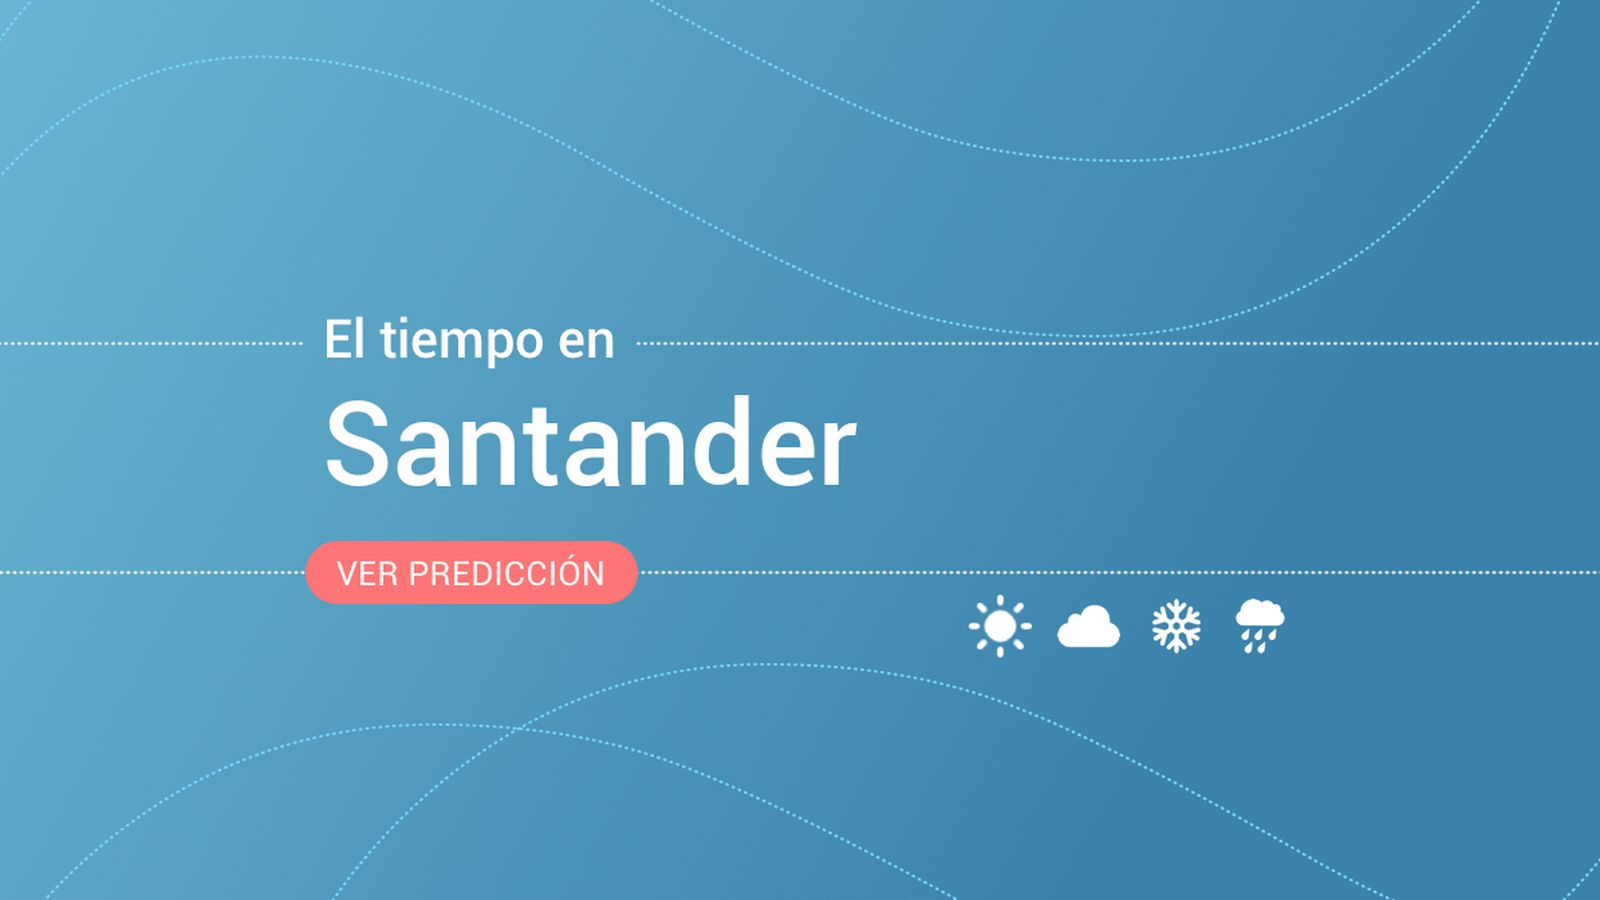 Foto: El tiempo en Santander. (EC)